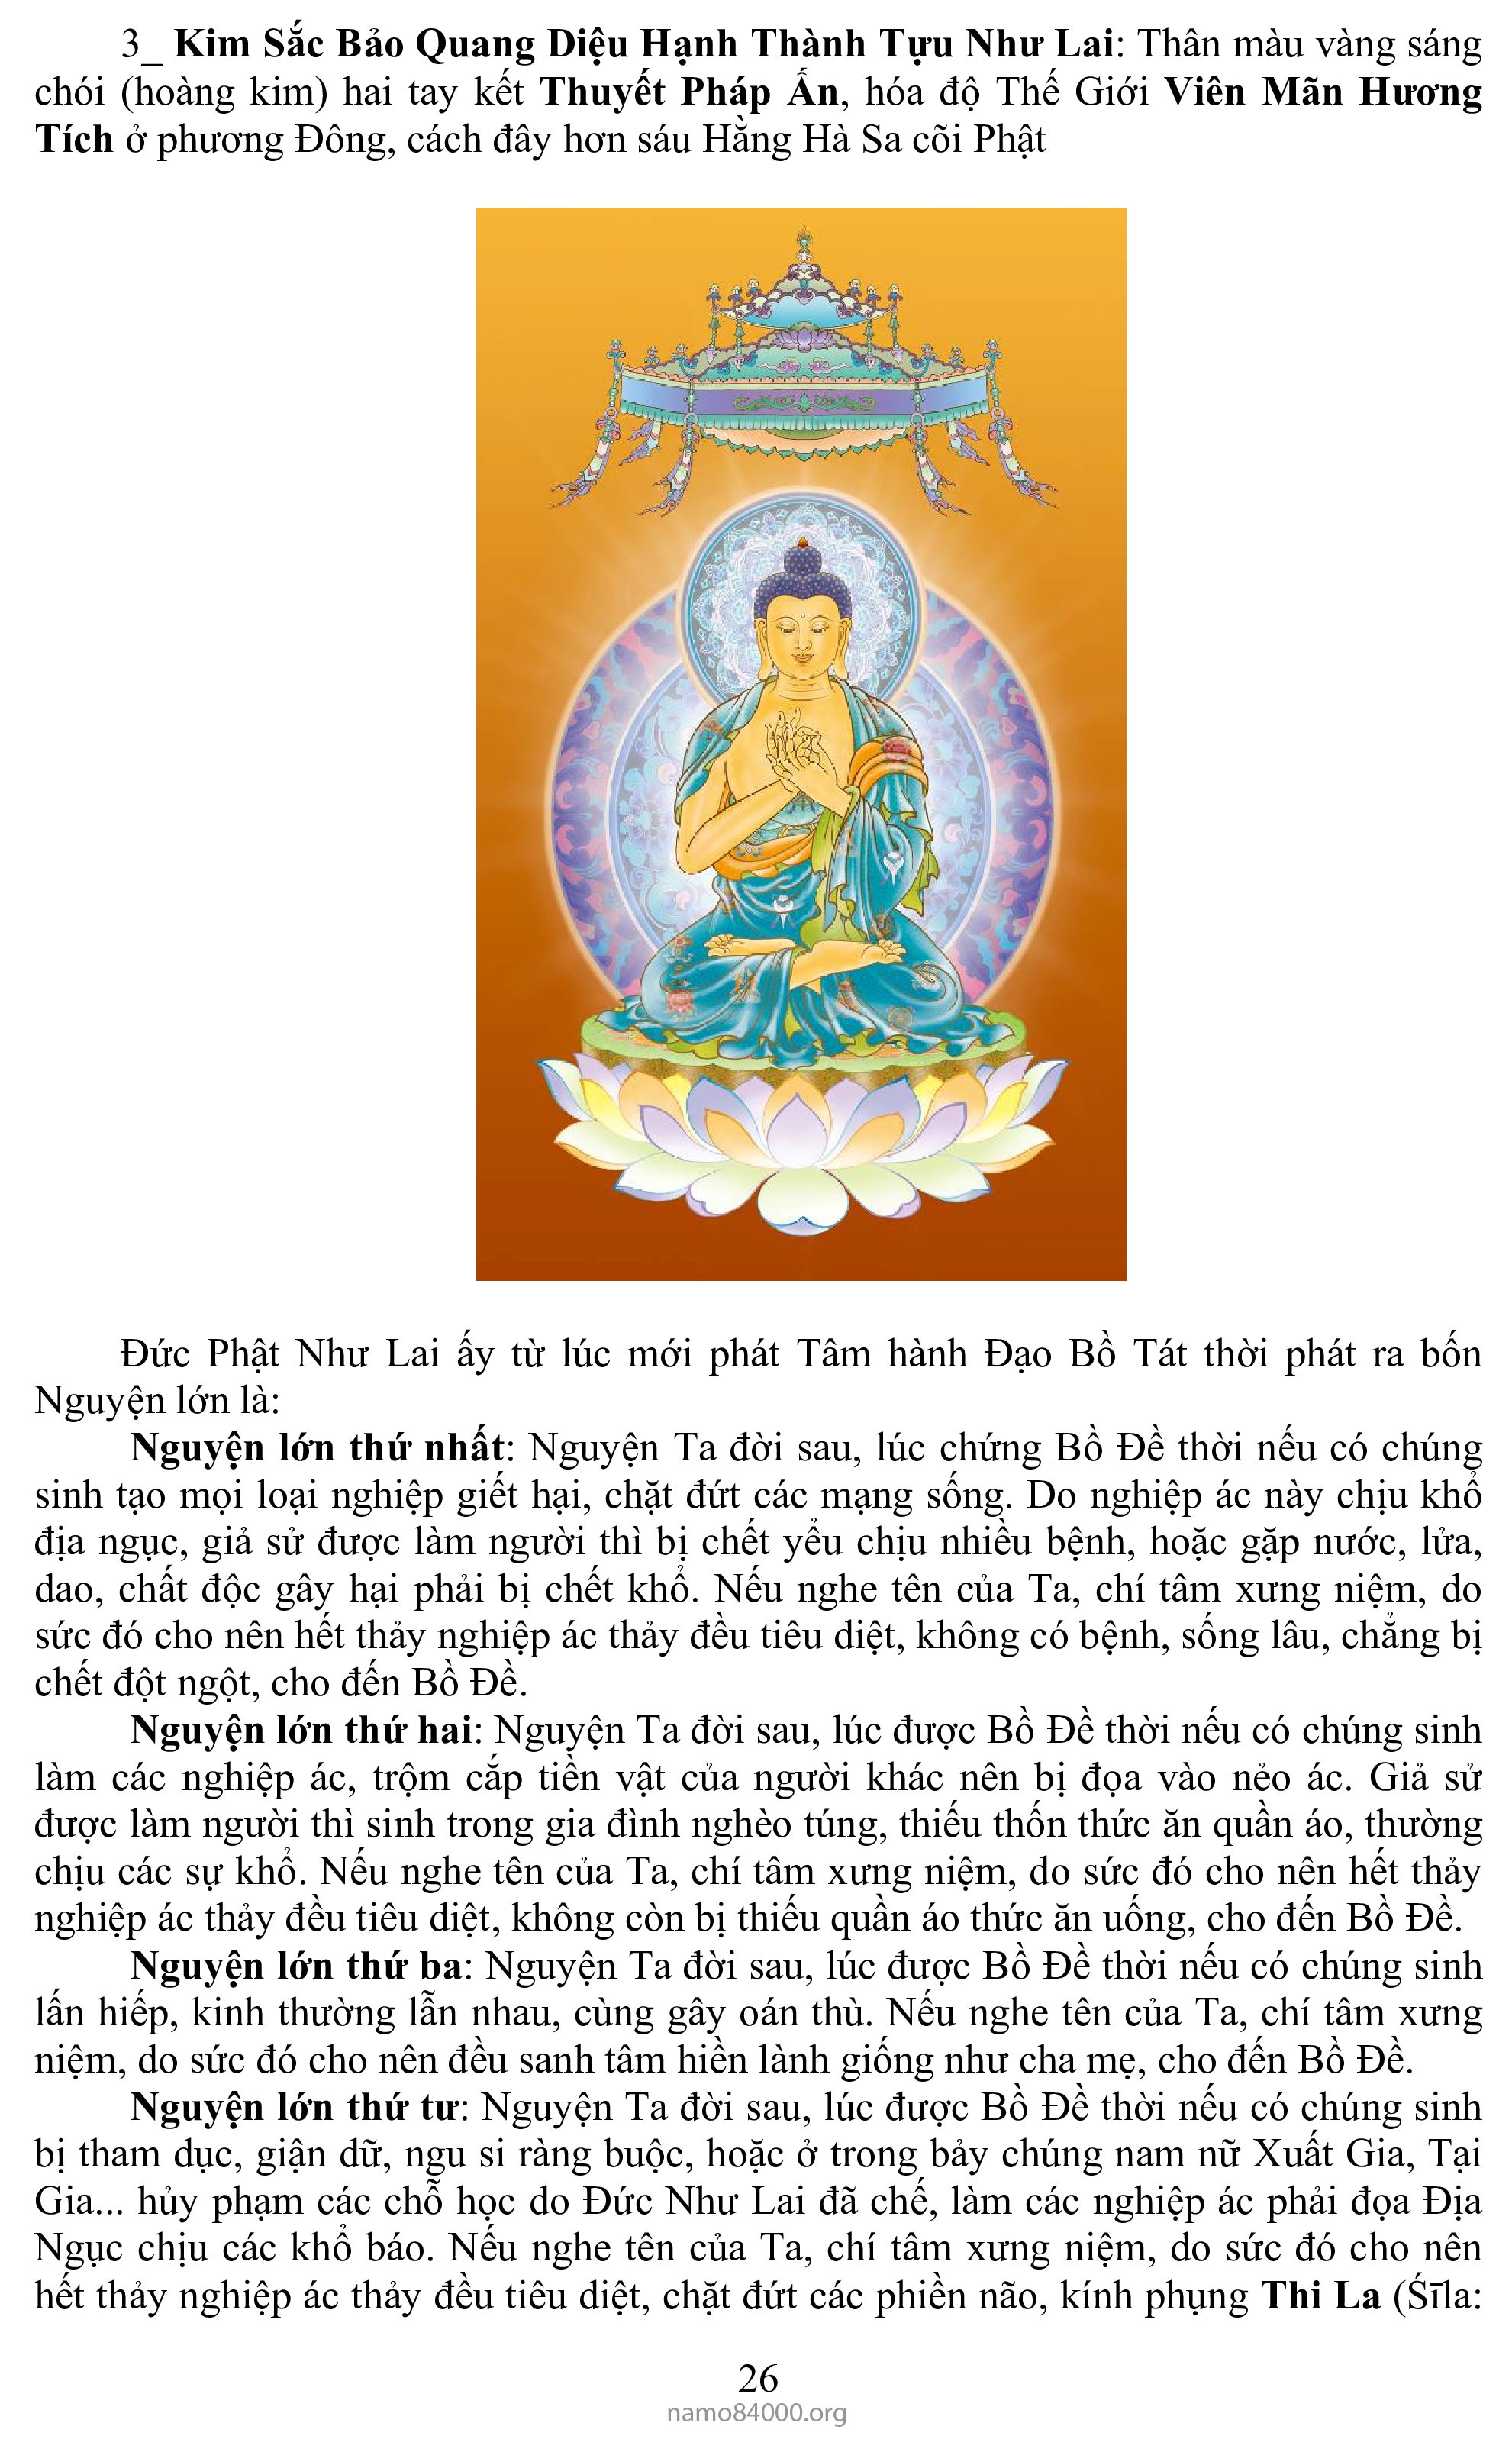 Bảy Đức Phật Dược Sư